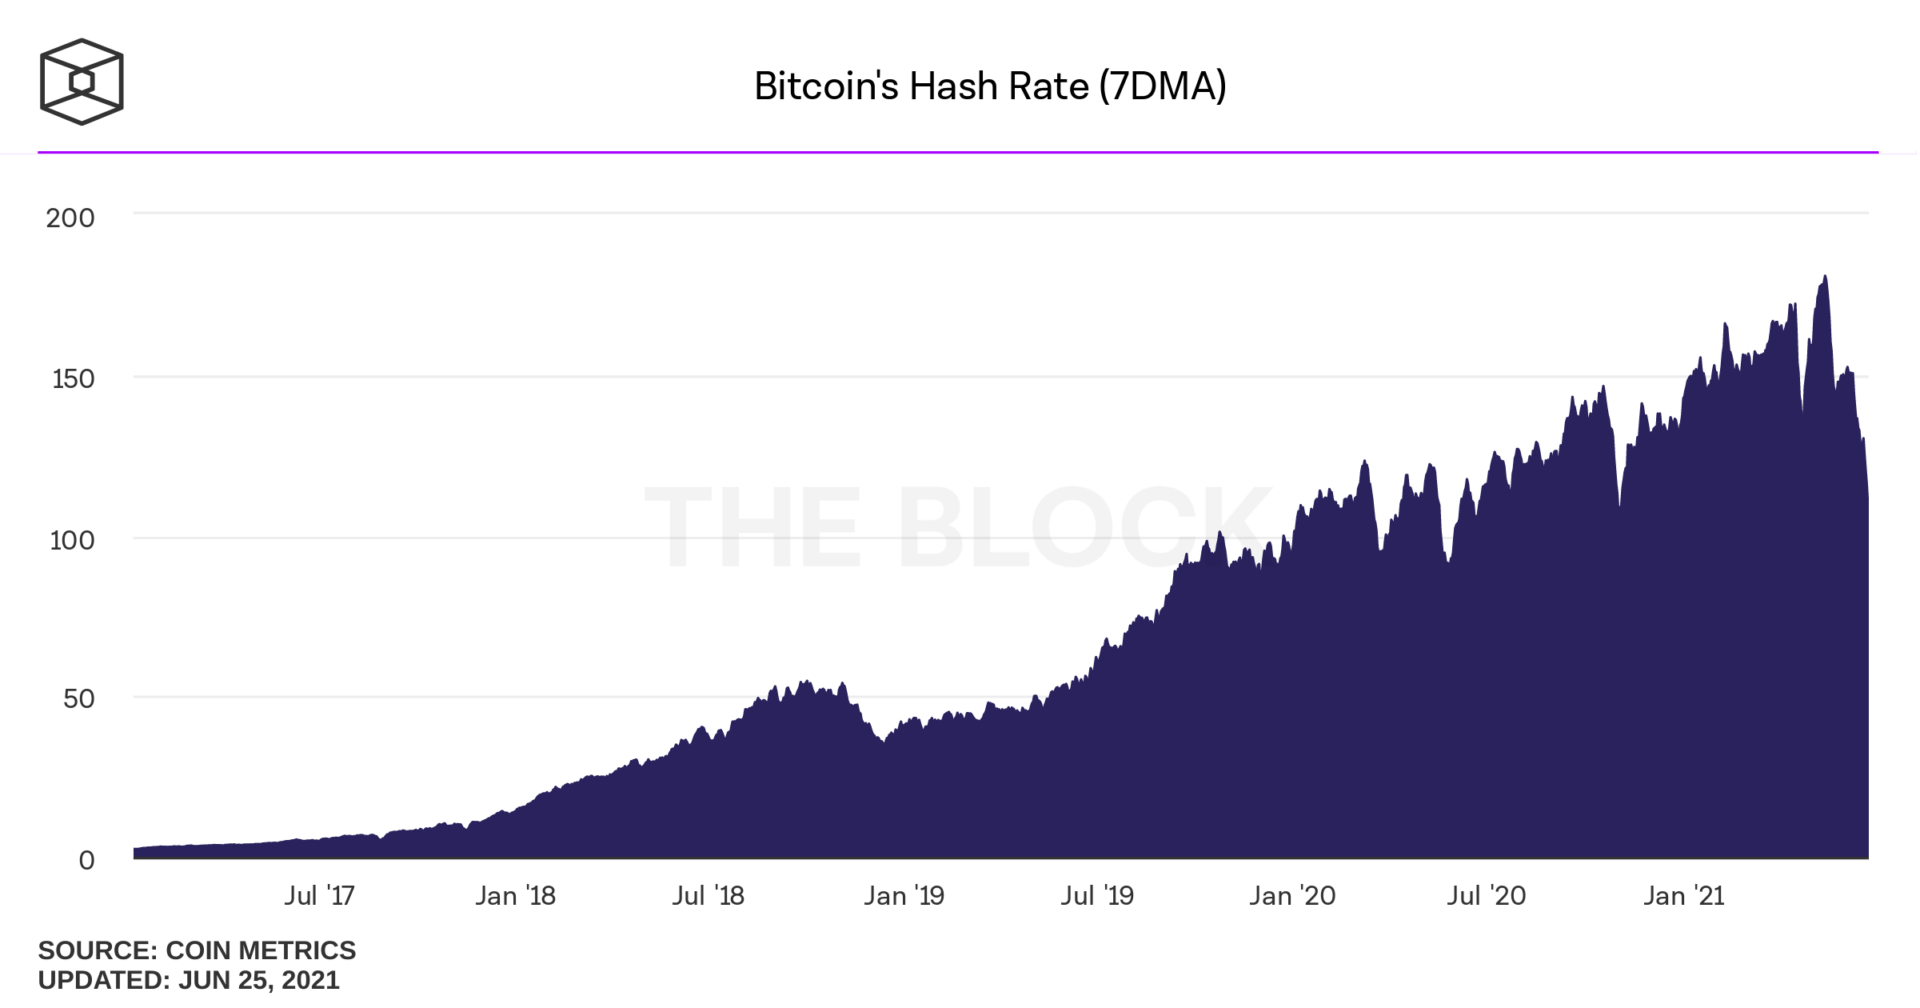 Moyenne mobile à 7 jours du hashrate du réseau Bitcoin montrant une chute du hasrate sur les dernières semaines.